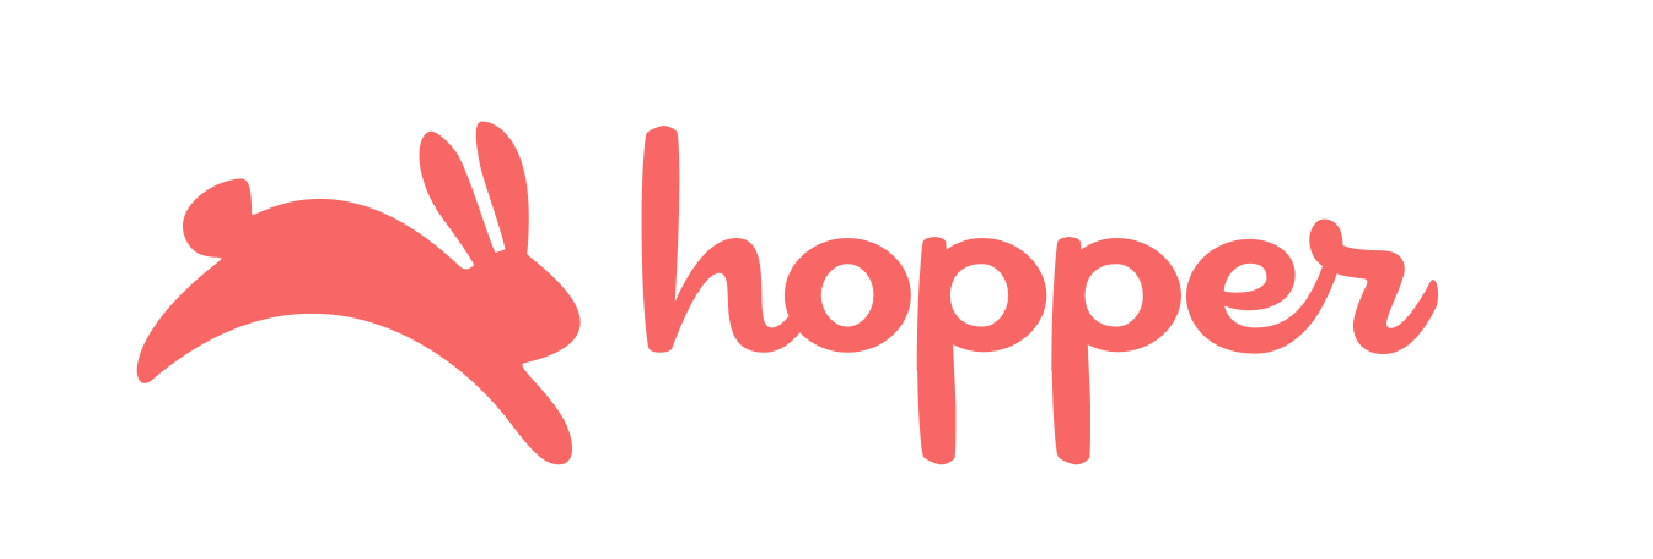 HOPPER-02